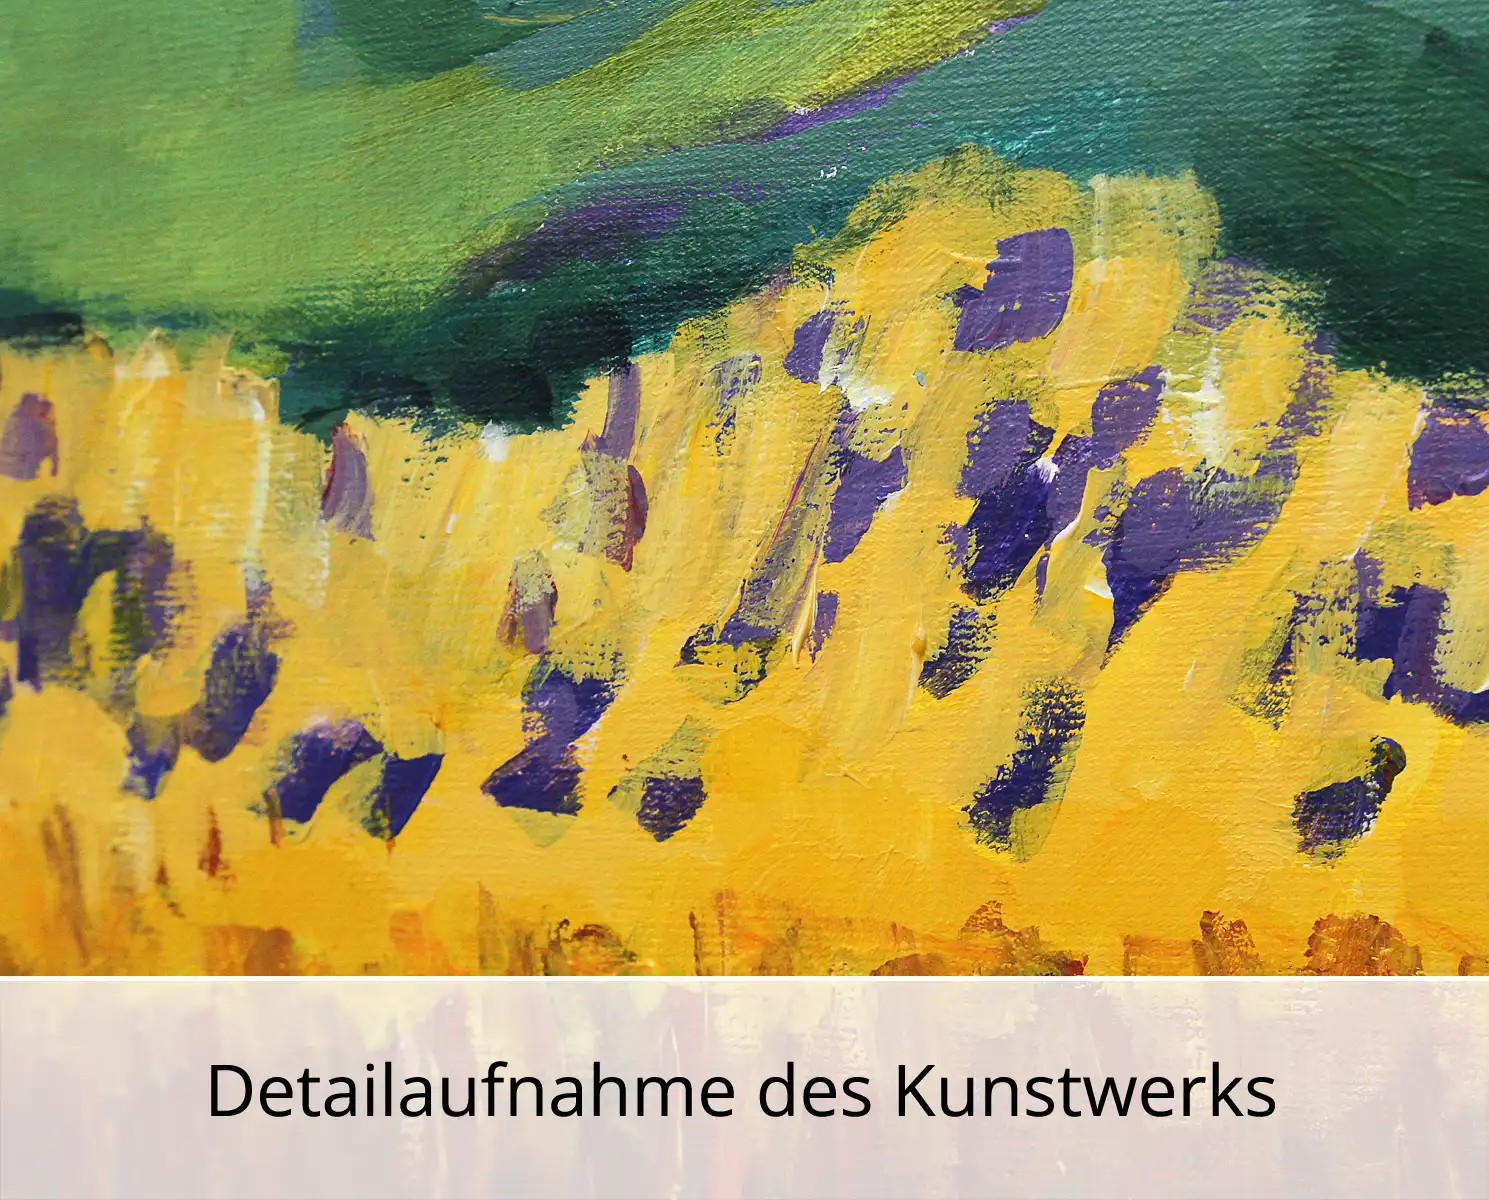 M. Cieśla: "Feldlandschaft", Original/Unikat, expressionistisches Gemälde